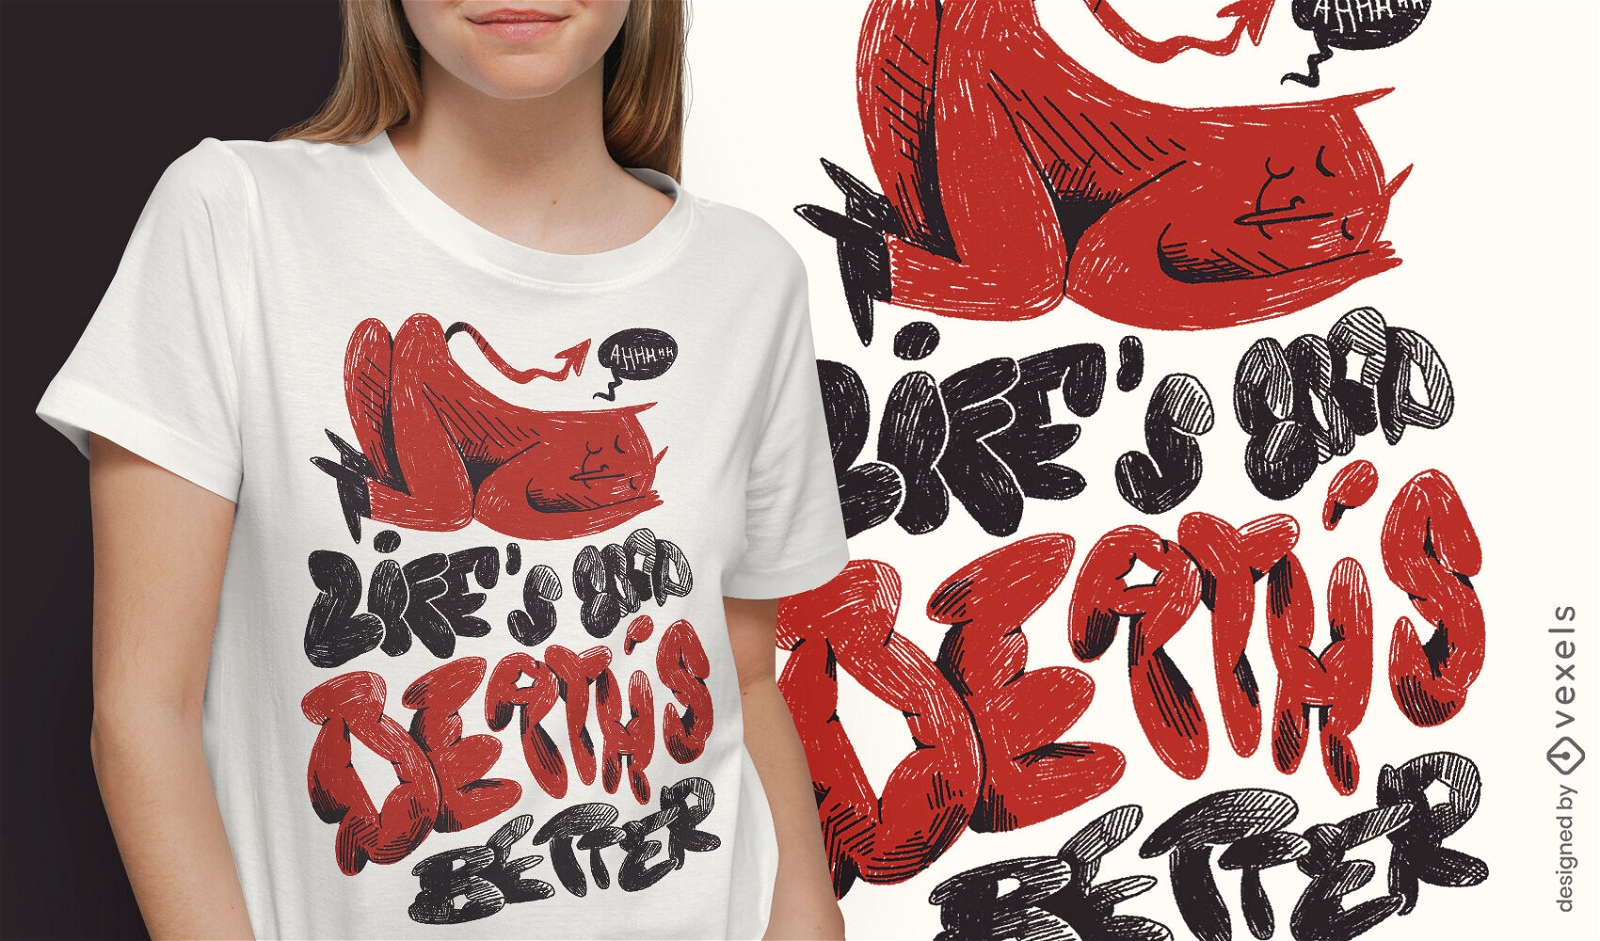 Death's better afterlife t-shirt design